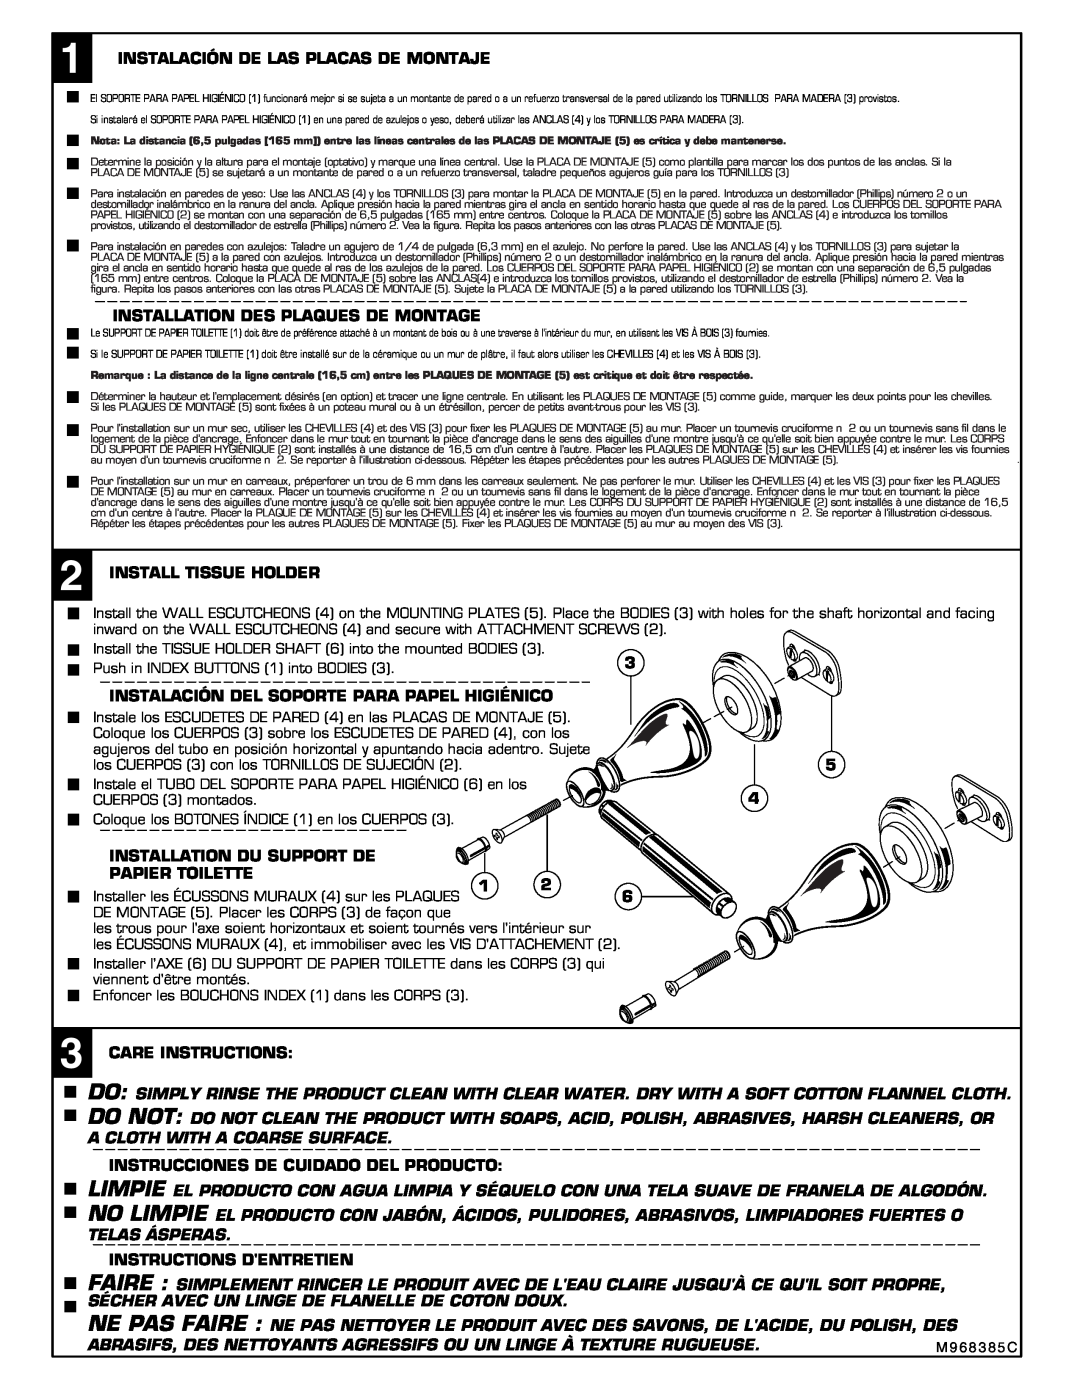 American Standard 2823 installation instructions Instalación De Las Placas De Montaje 